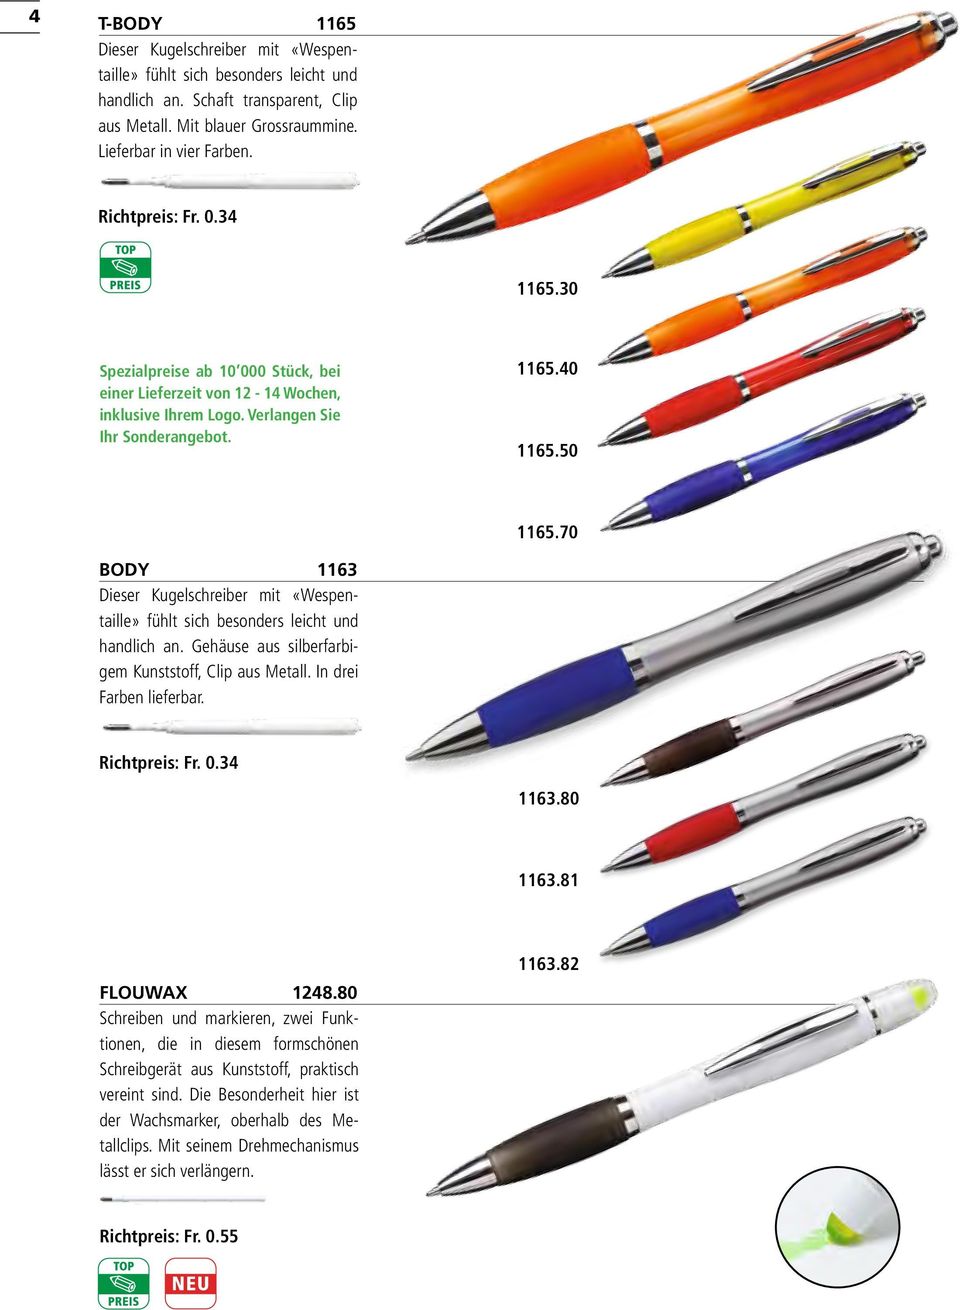 70 BODY 1163 Dieser Kugelschreiber mit «Wespentaille» fühlt sich besonders leicht und handlich an. Gehäuse aus silberfarbigem Kunststoff, Clip aus Metall. In drei Farben lieferbar. Richtpreis: Fr. 0.